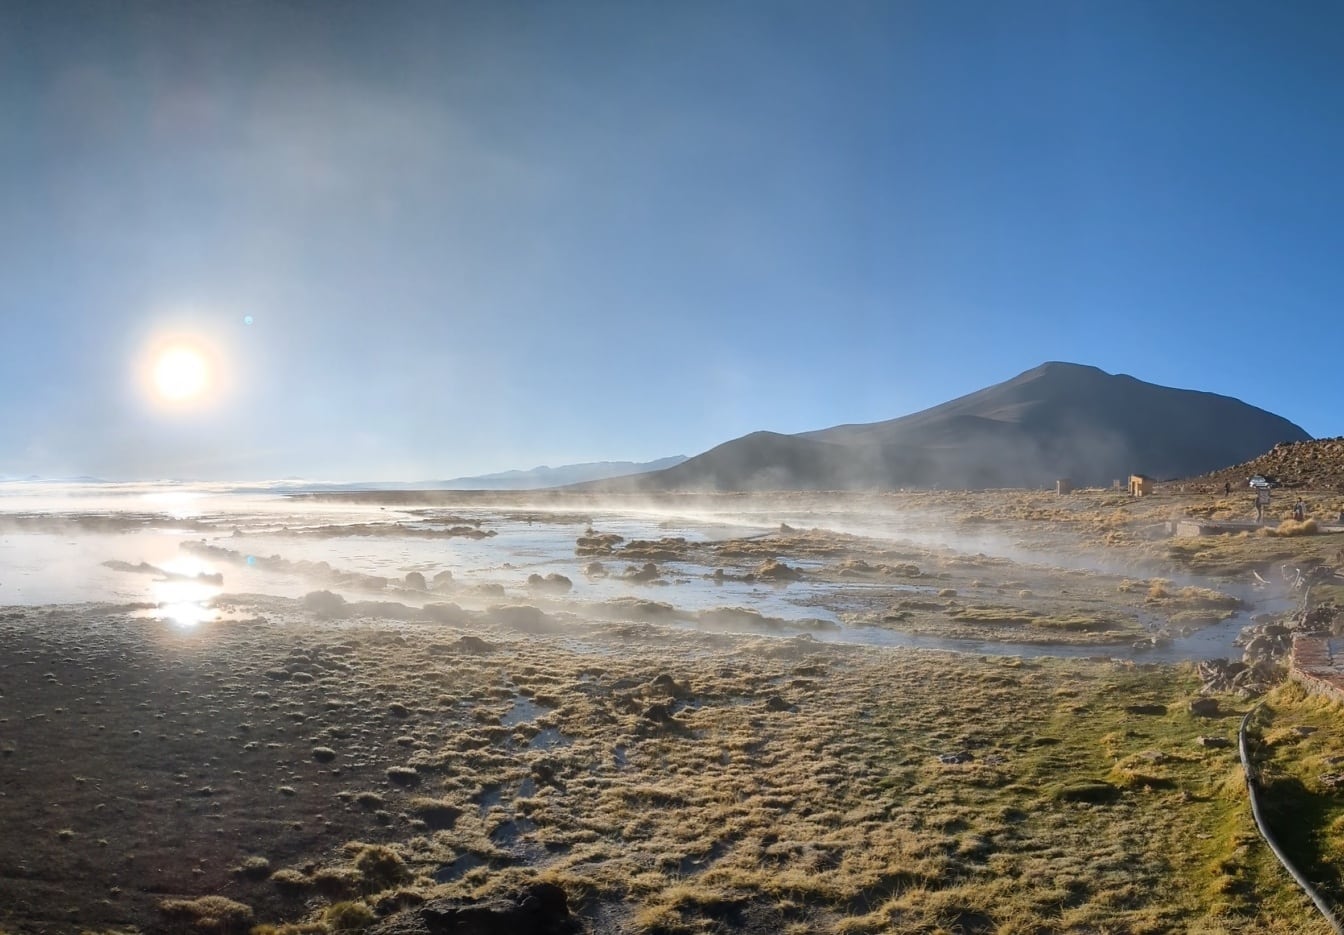 Lever du soleil à Laguna Polques au lac salé d’Uyuni sur le plateau bolivien, avec des sources chaudes géothermiques